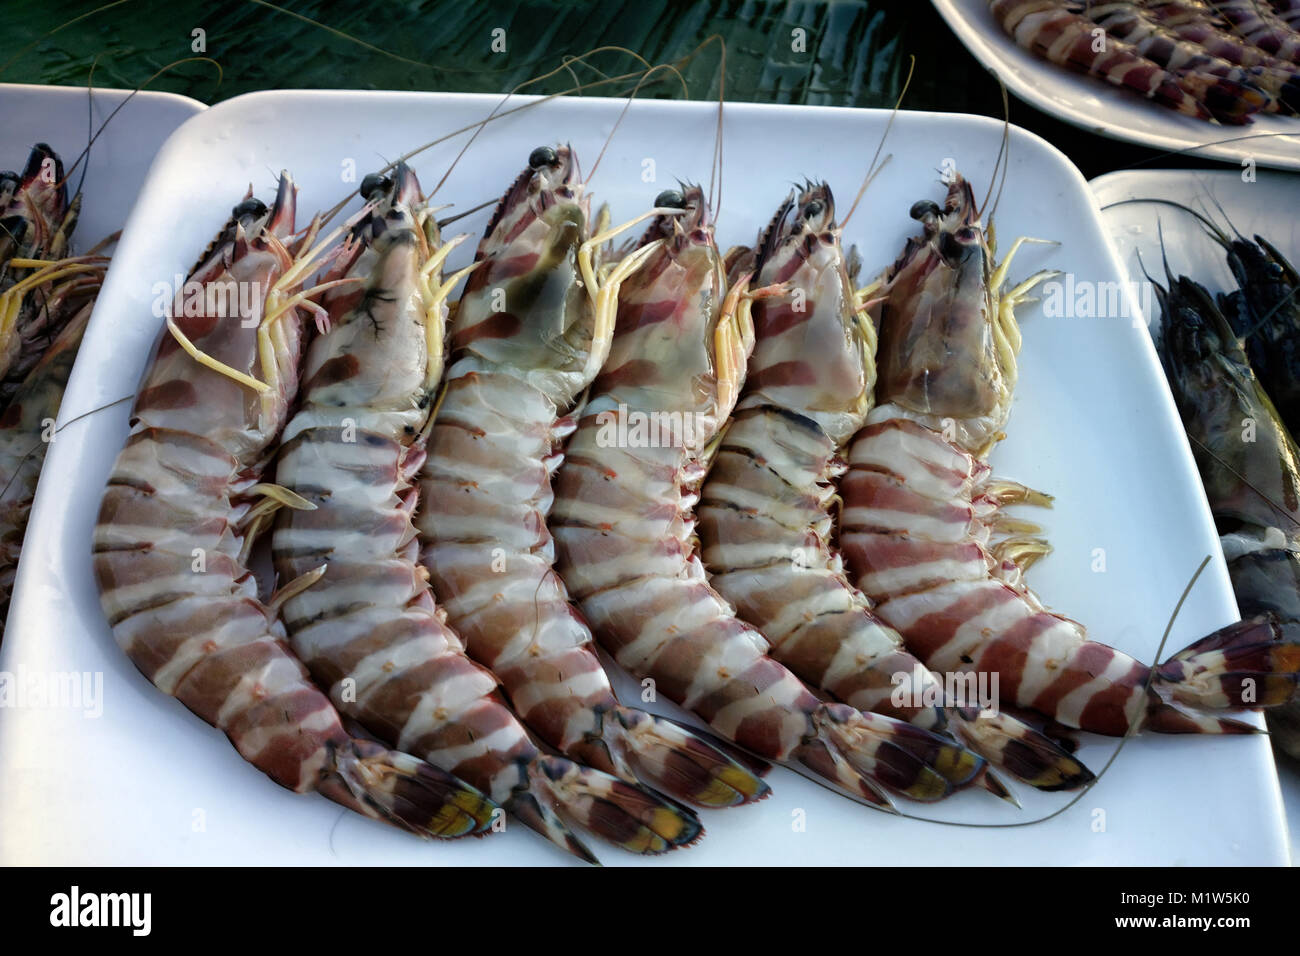 La crevette géante tigrée (Penaeus) sur le marché du poisson, la pêche aux enchères en province du Kerala, Inde. La mer d'Oman Banque D'Images